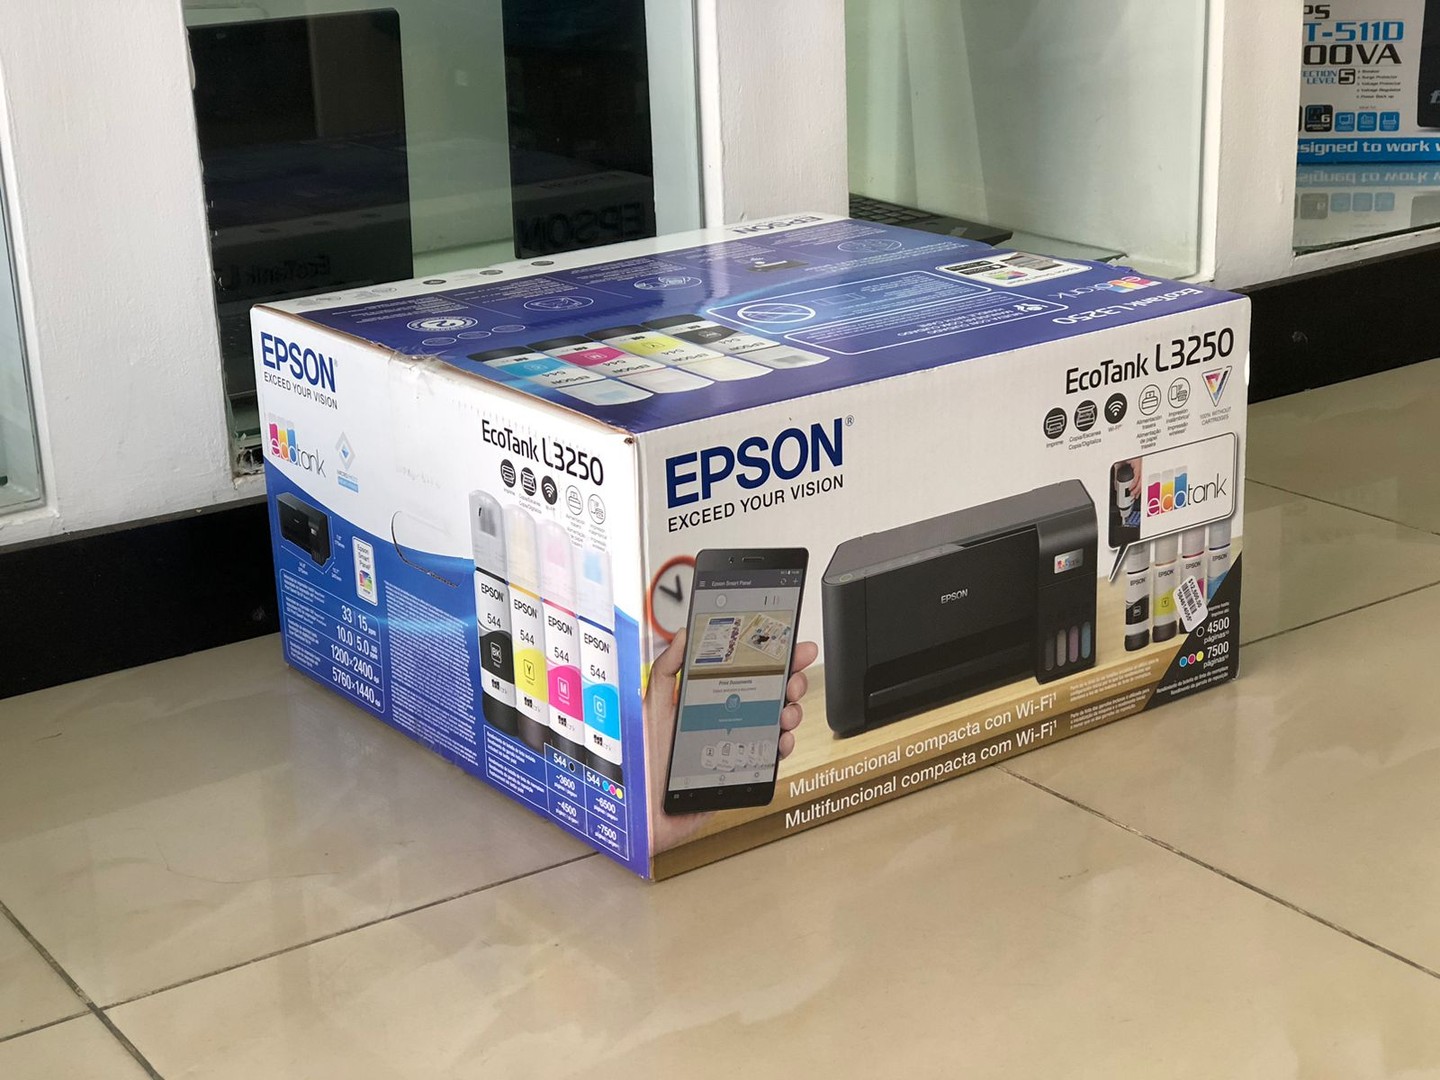 impresoras y scanners - Multifuncional Impresora, Wifi Epson L3250  mas garantía
Conexión al Celular 2